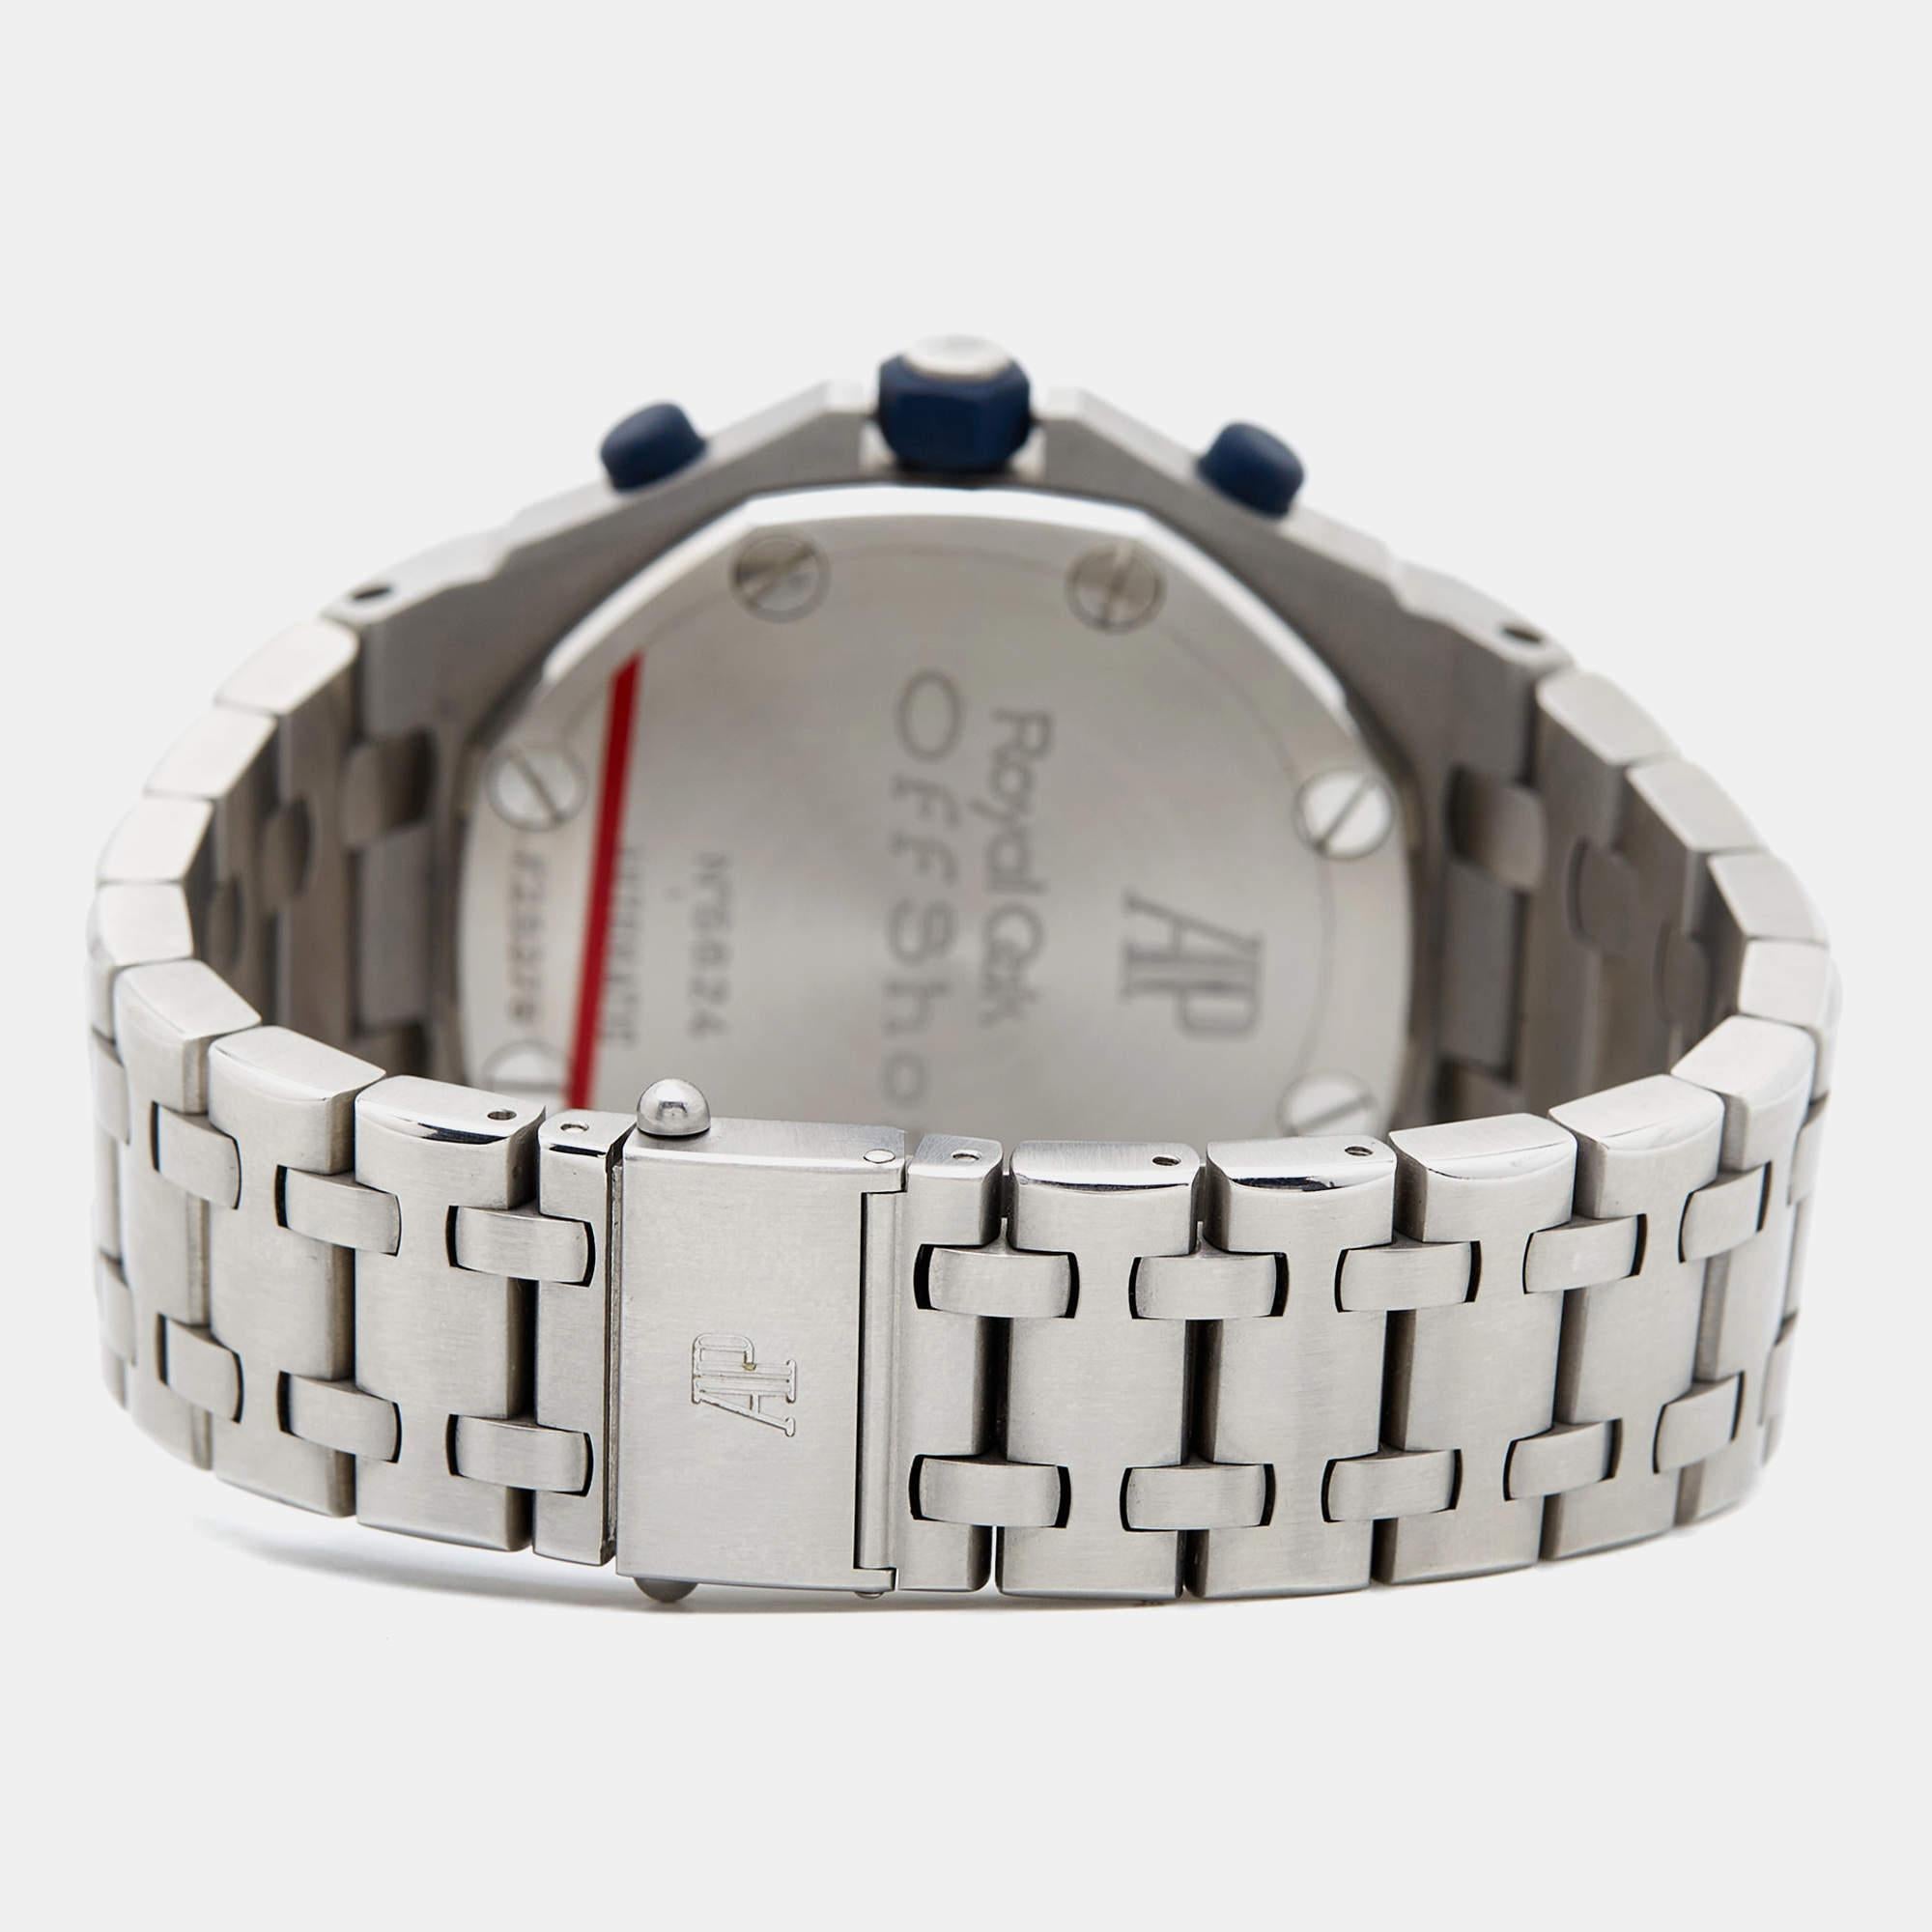 Die 1972 kreierte Audemars Piguet Royal Oak ist eine Uhr, die Generationen von Uhrmachern und Luxusuhrensammlern inspiriert hat. Auf den ersten Blick erkennbar, ist die Royal Oak eine Kreation wie keine andere. Es ist ein Zeitmesser, den man über